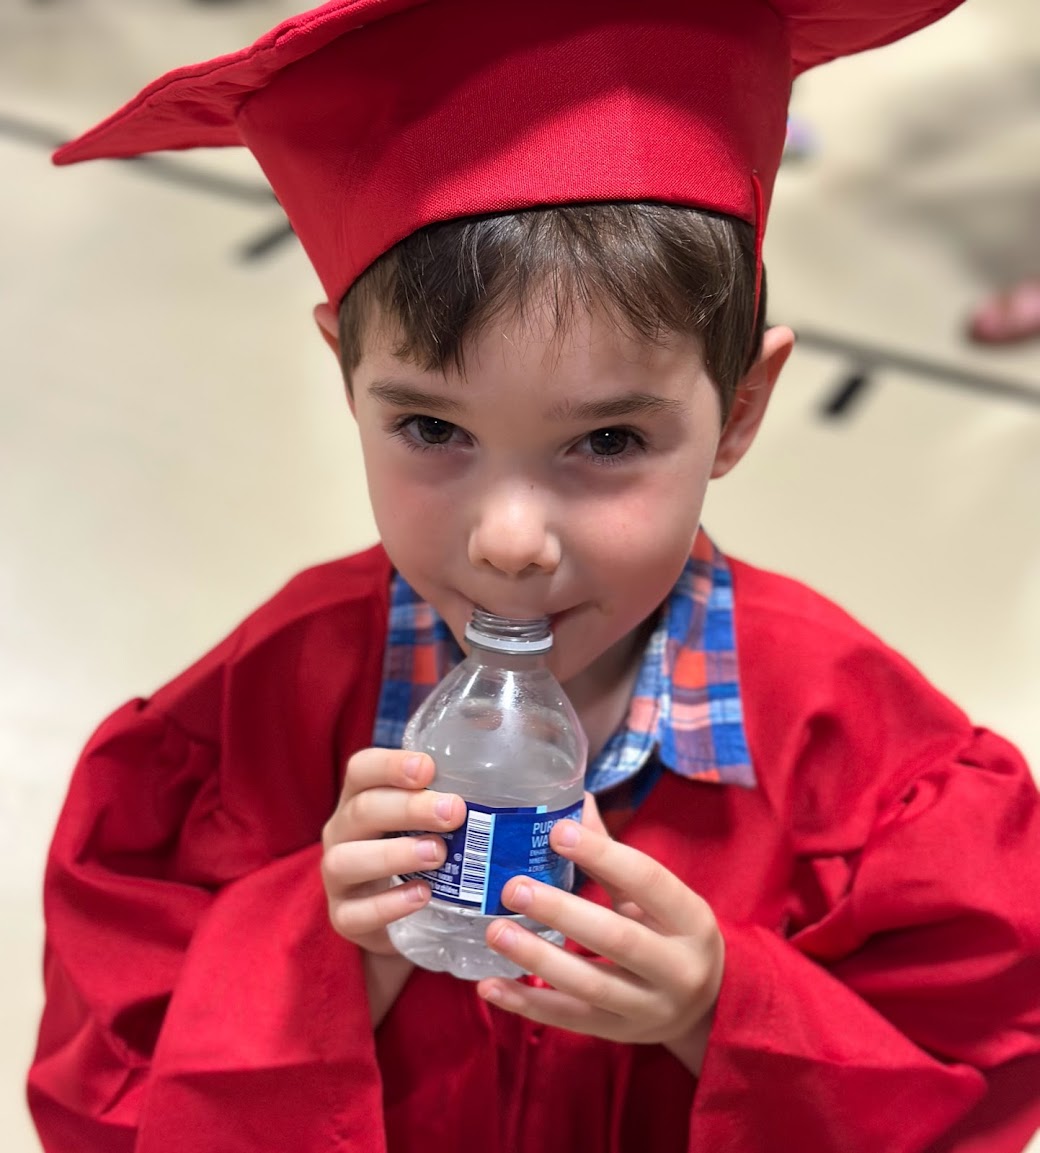 graduation refreshment for a preschool boy